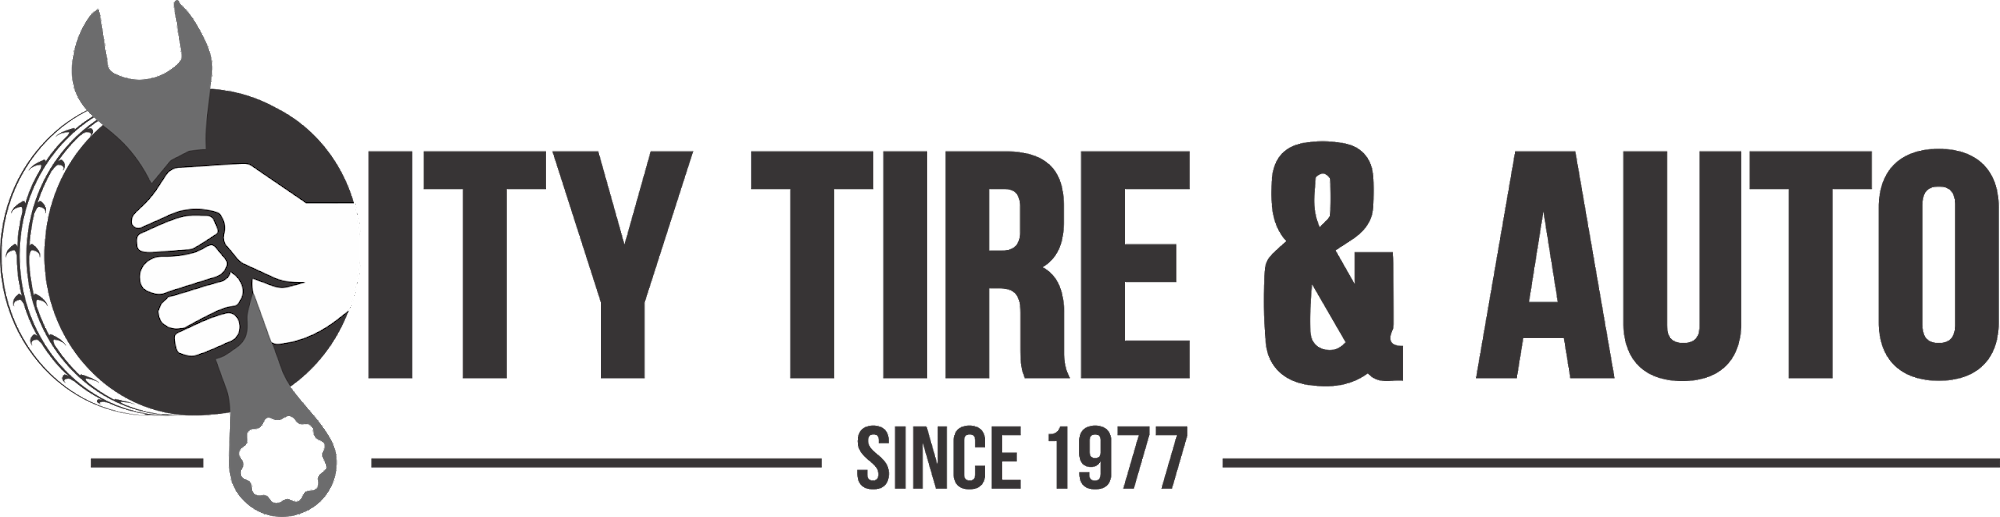 City Tire & Auto Centre Ltd 56 Hardy Ave, Grand Falls-Windsor Newfoundland and Labrador A2A 2J6